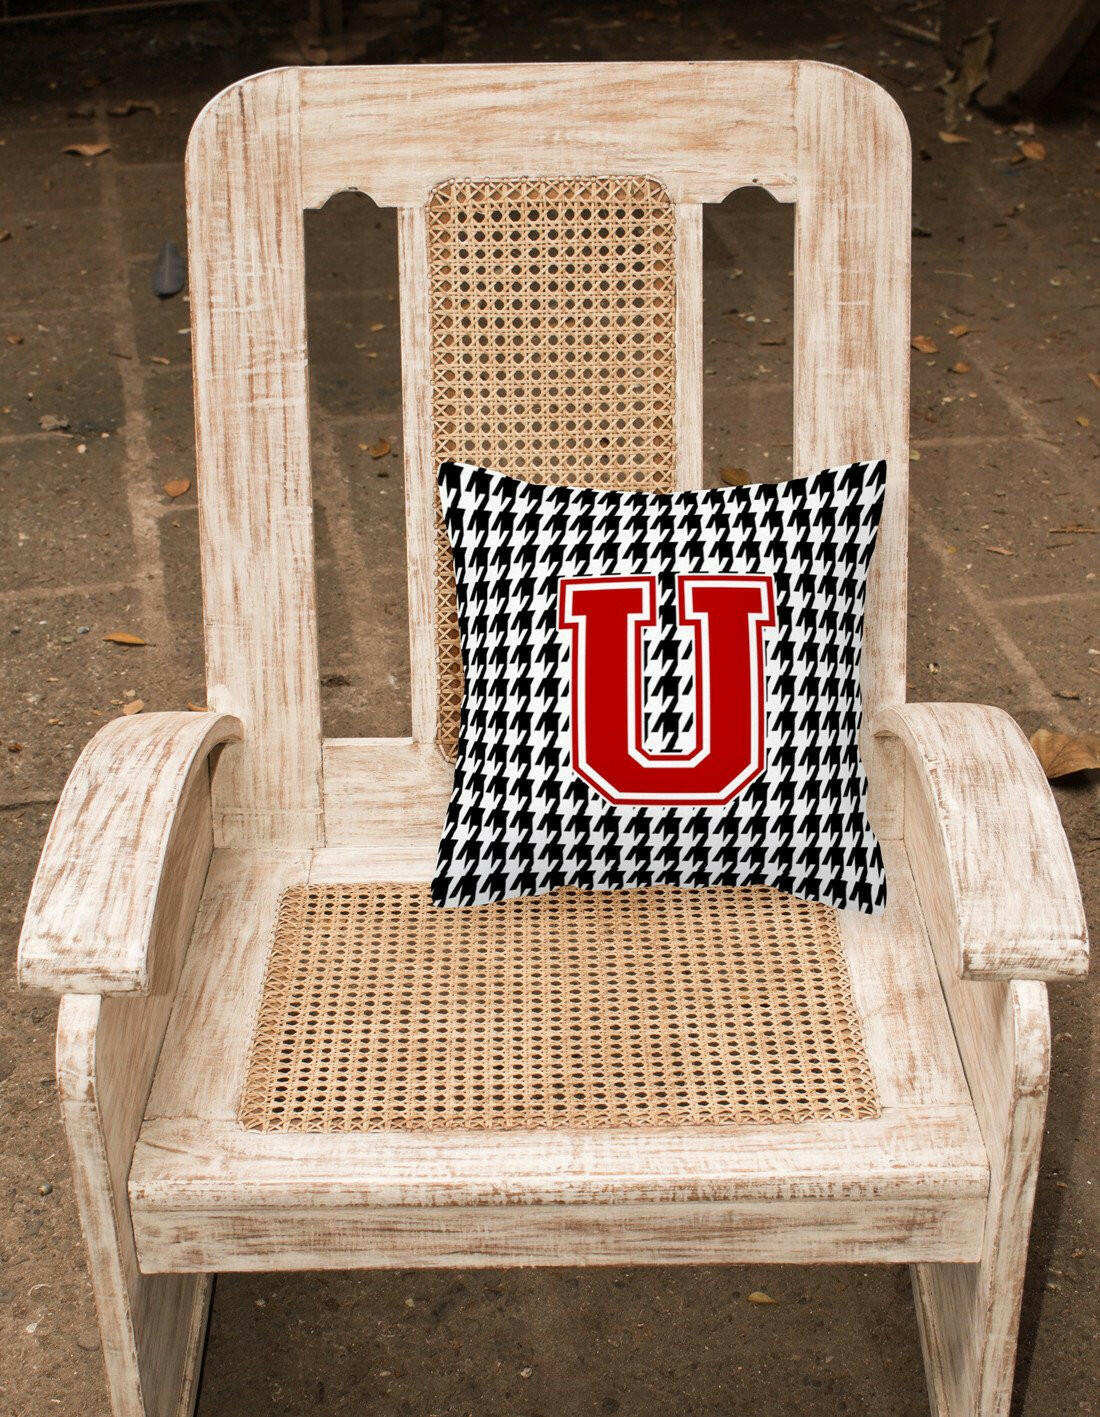 Monogram - Initial U Houndstooth Decorative   Canvas Fabric Pillow CJ1021 - the-store.com